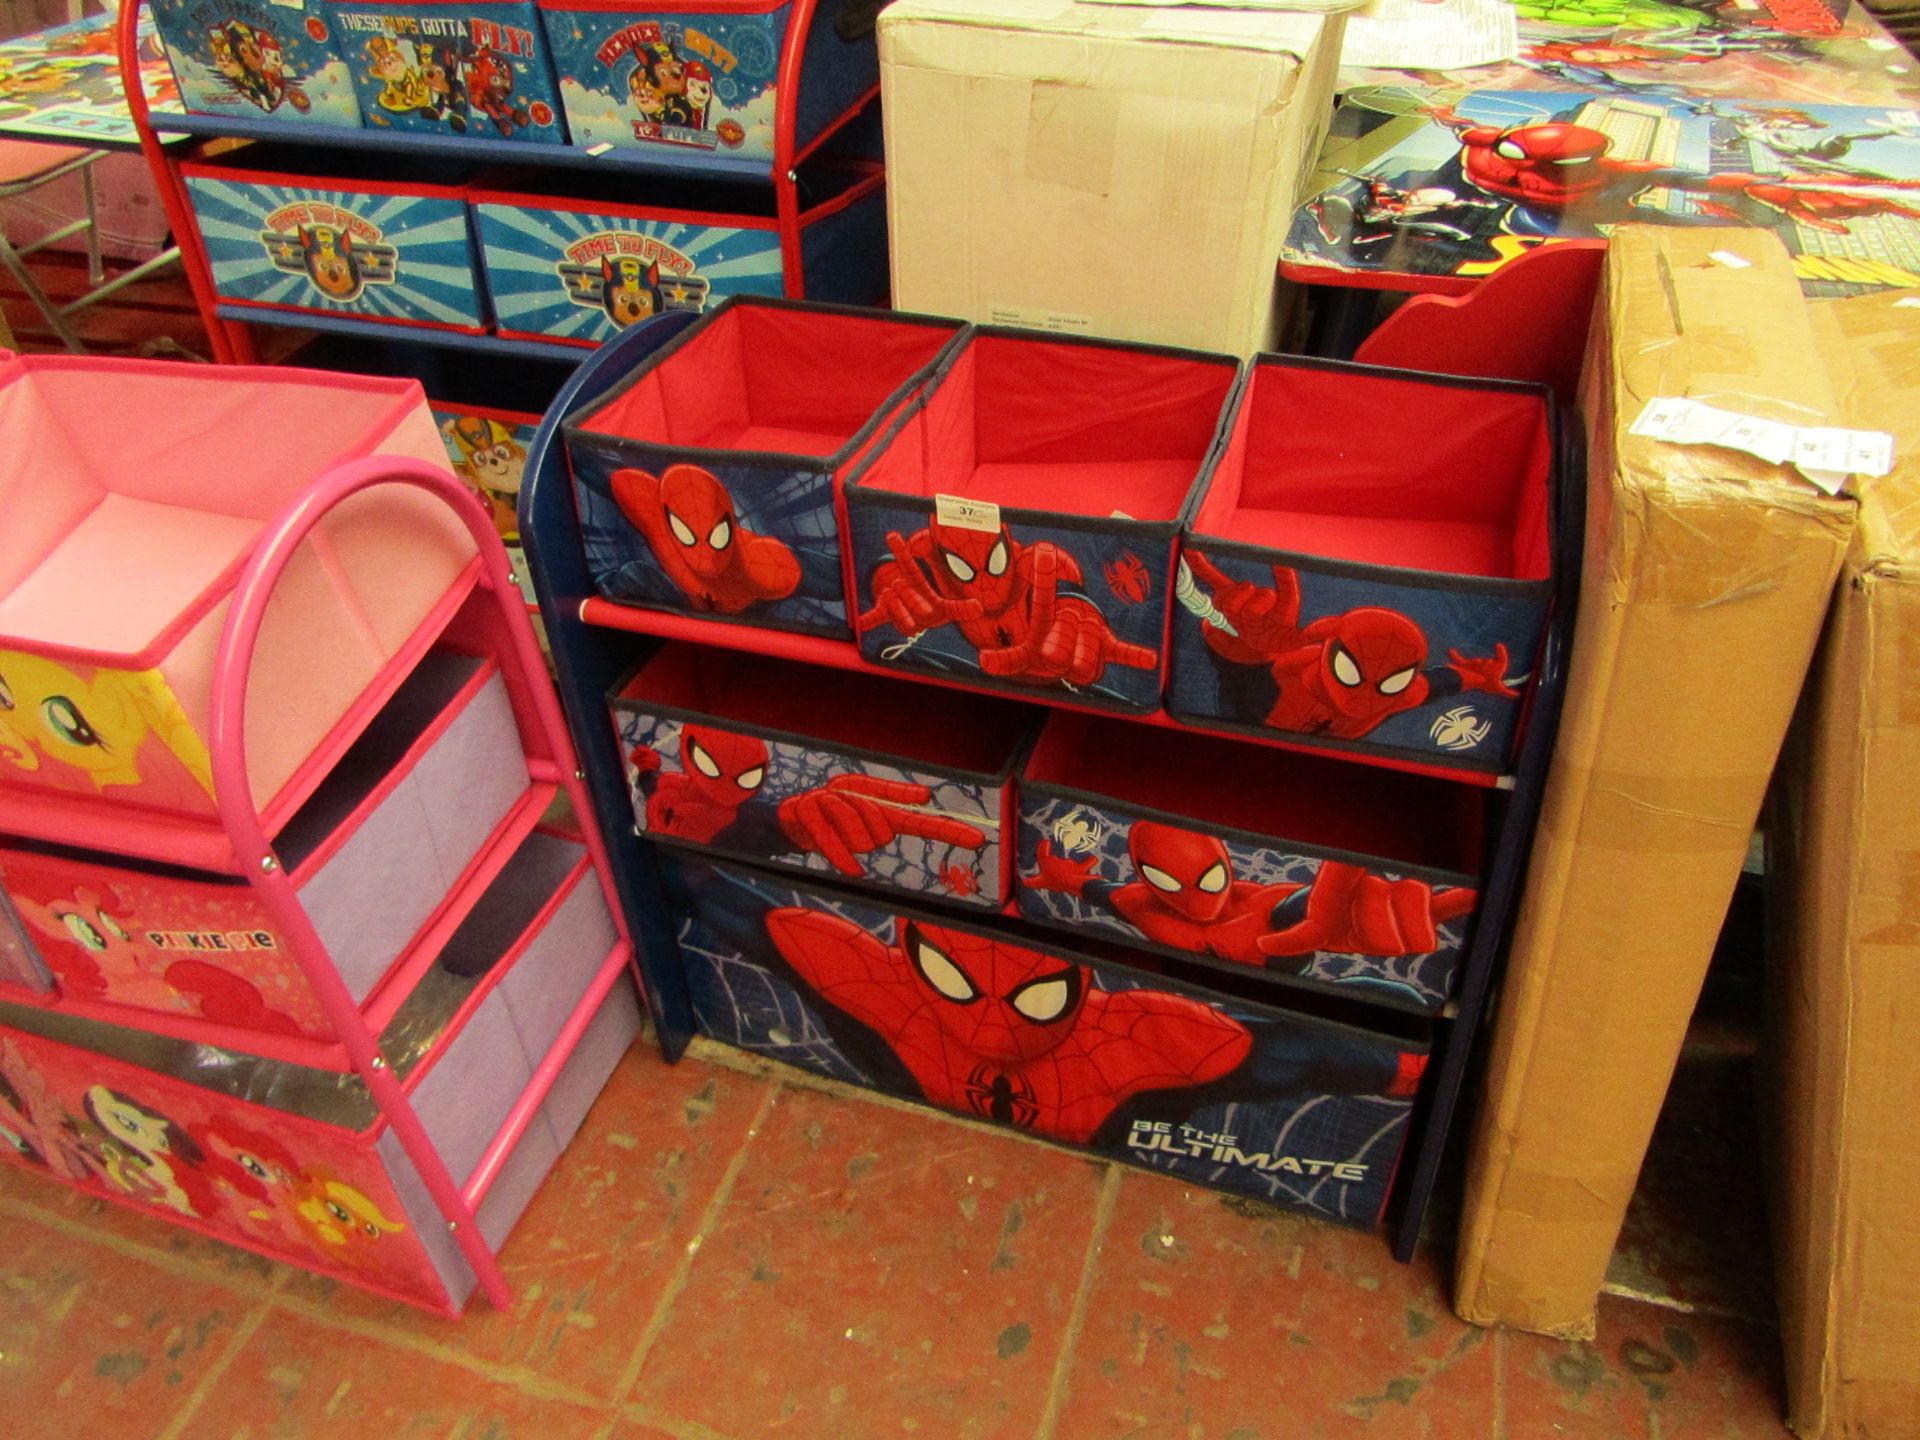 Spider-Man - Wooden Toy Storage Organizer - Looks Complete.